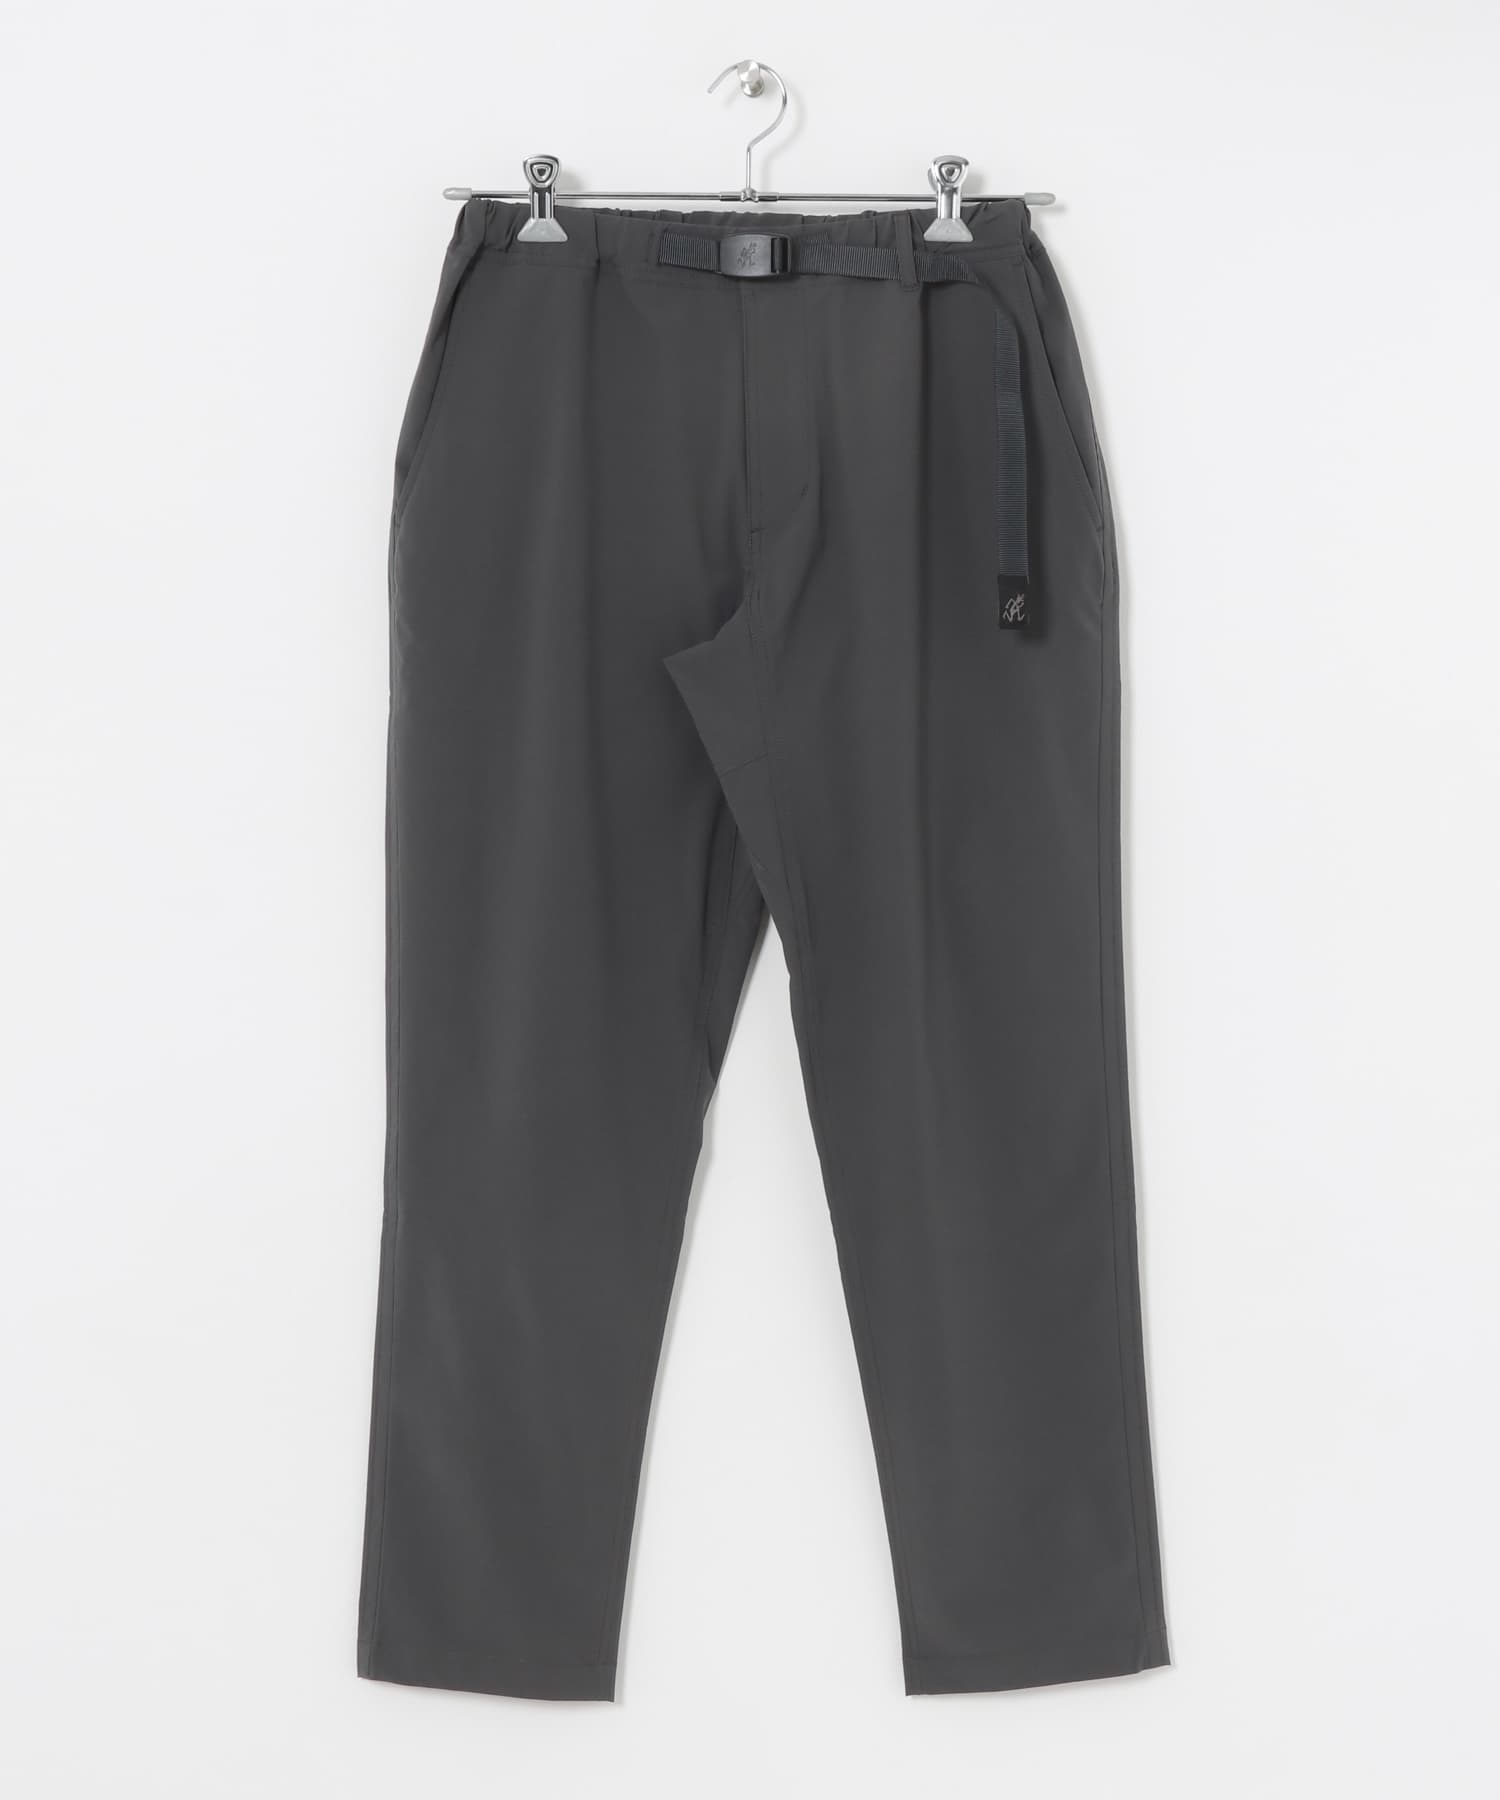 【別注】GRAMICCI SOLOTEX 高機能修身長褲(炭灰色-M-CHARCOAL GRAY)